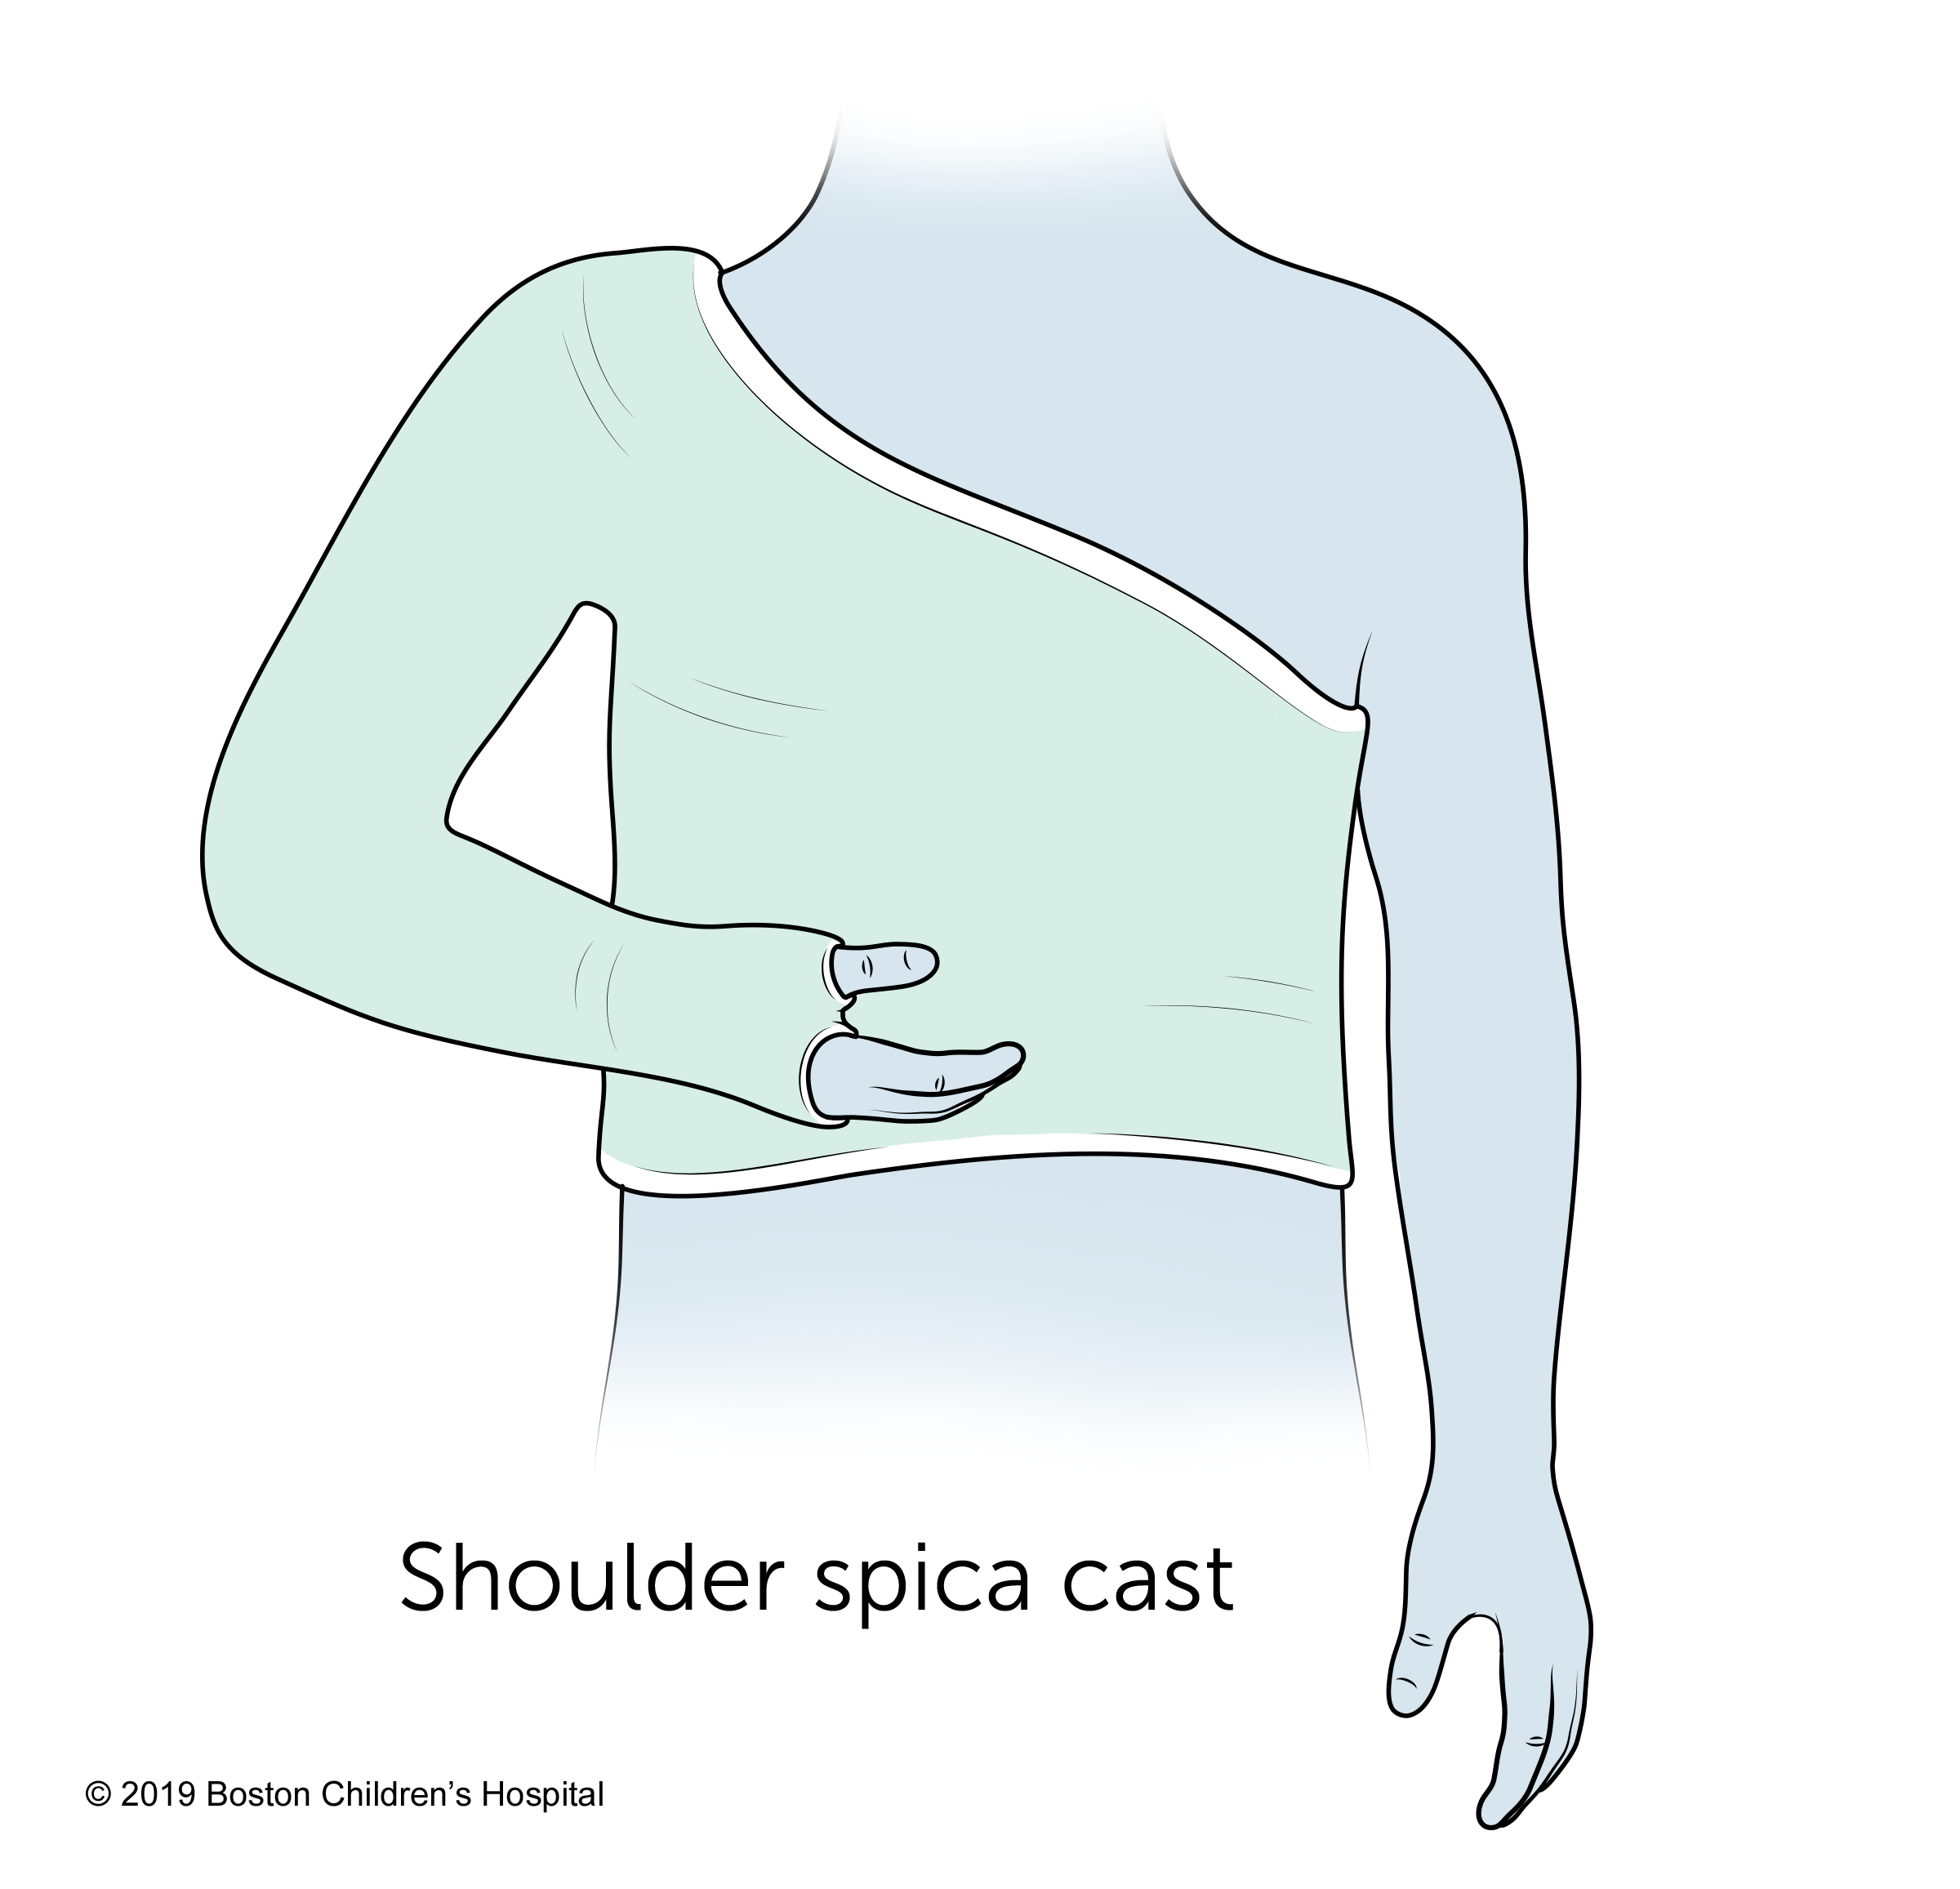 A shoulder spica cast